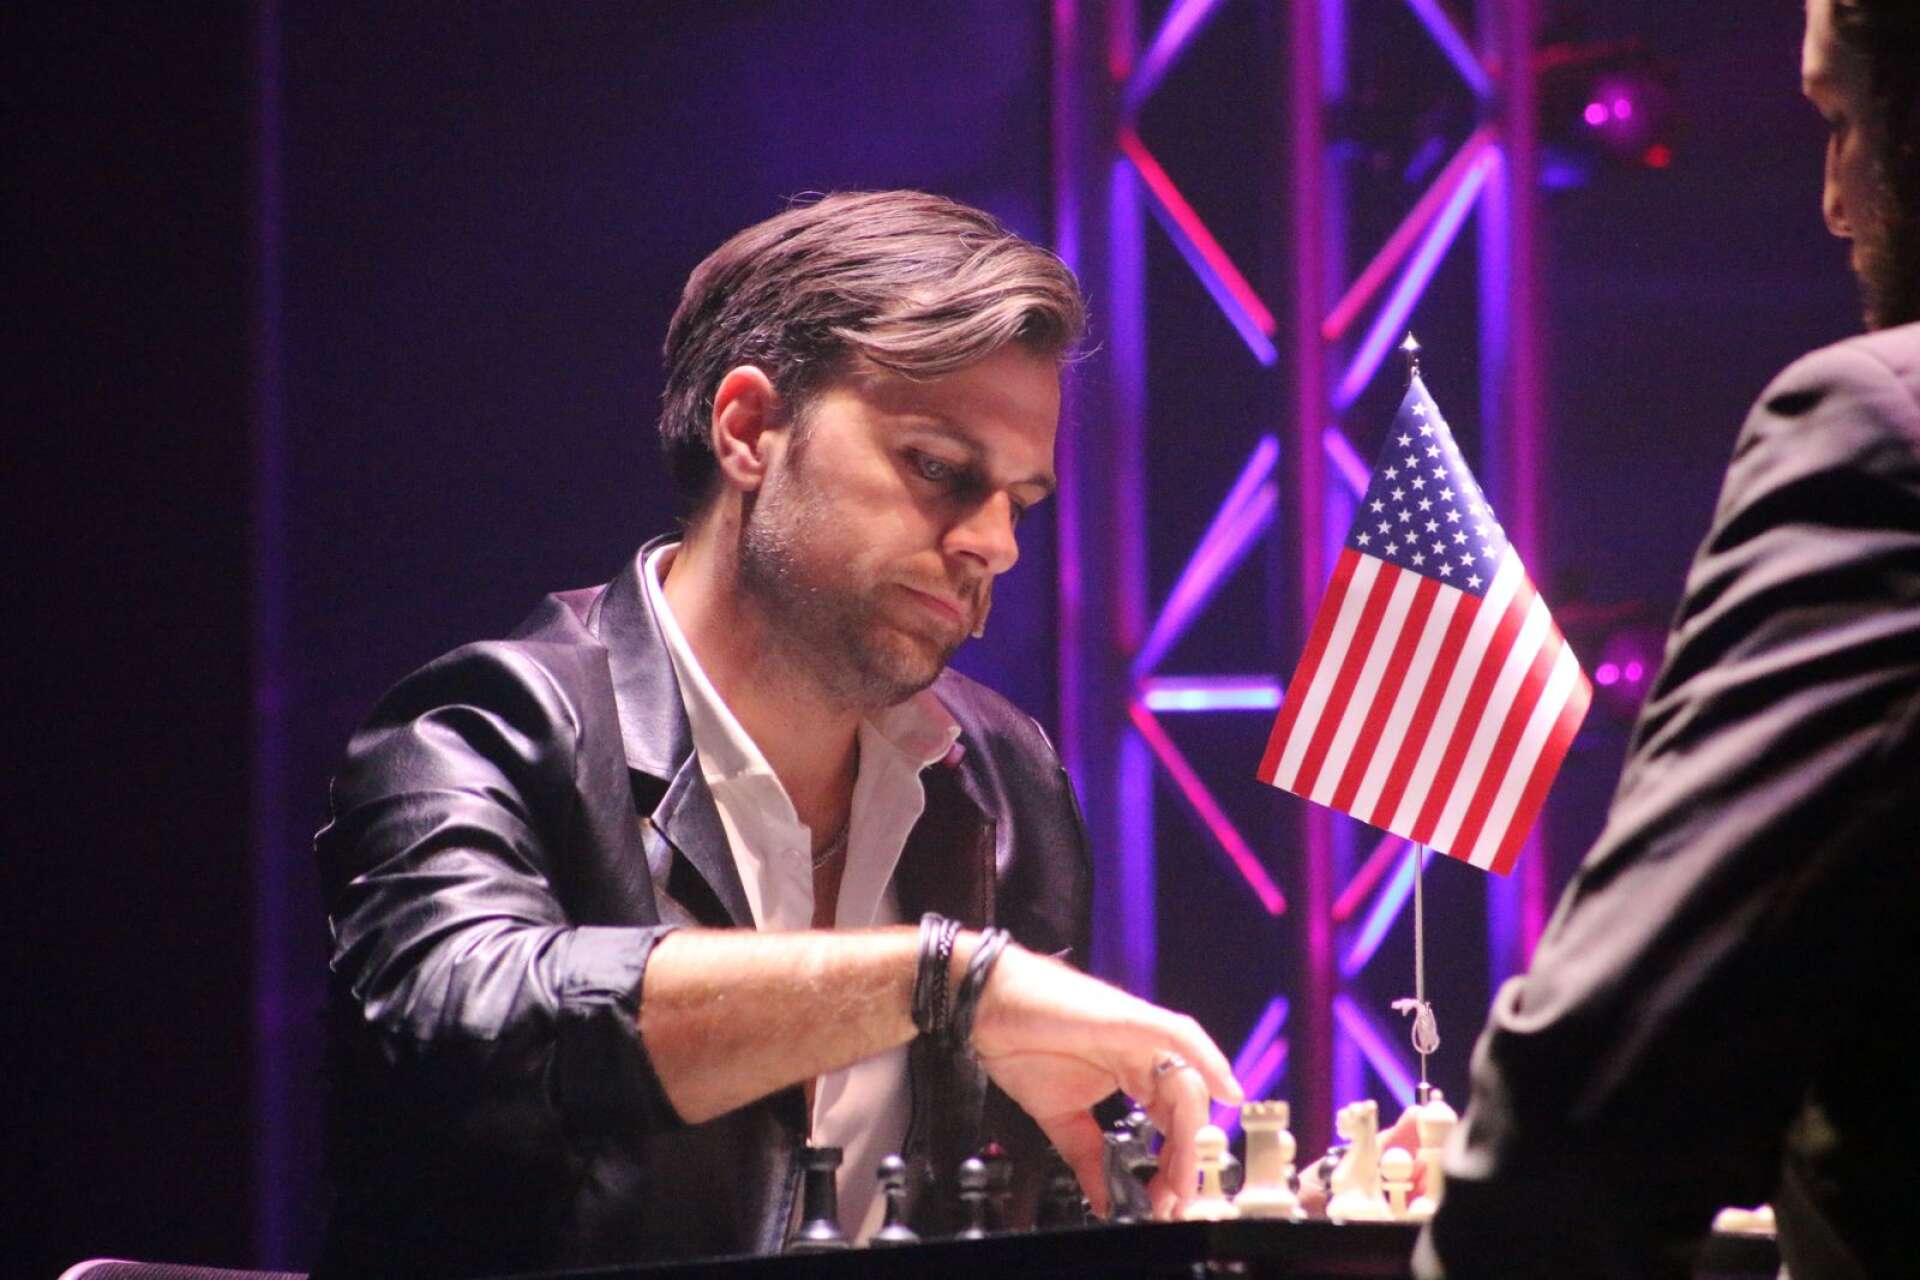 Chess hade premiär på Säffleoperan i lördags.